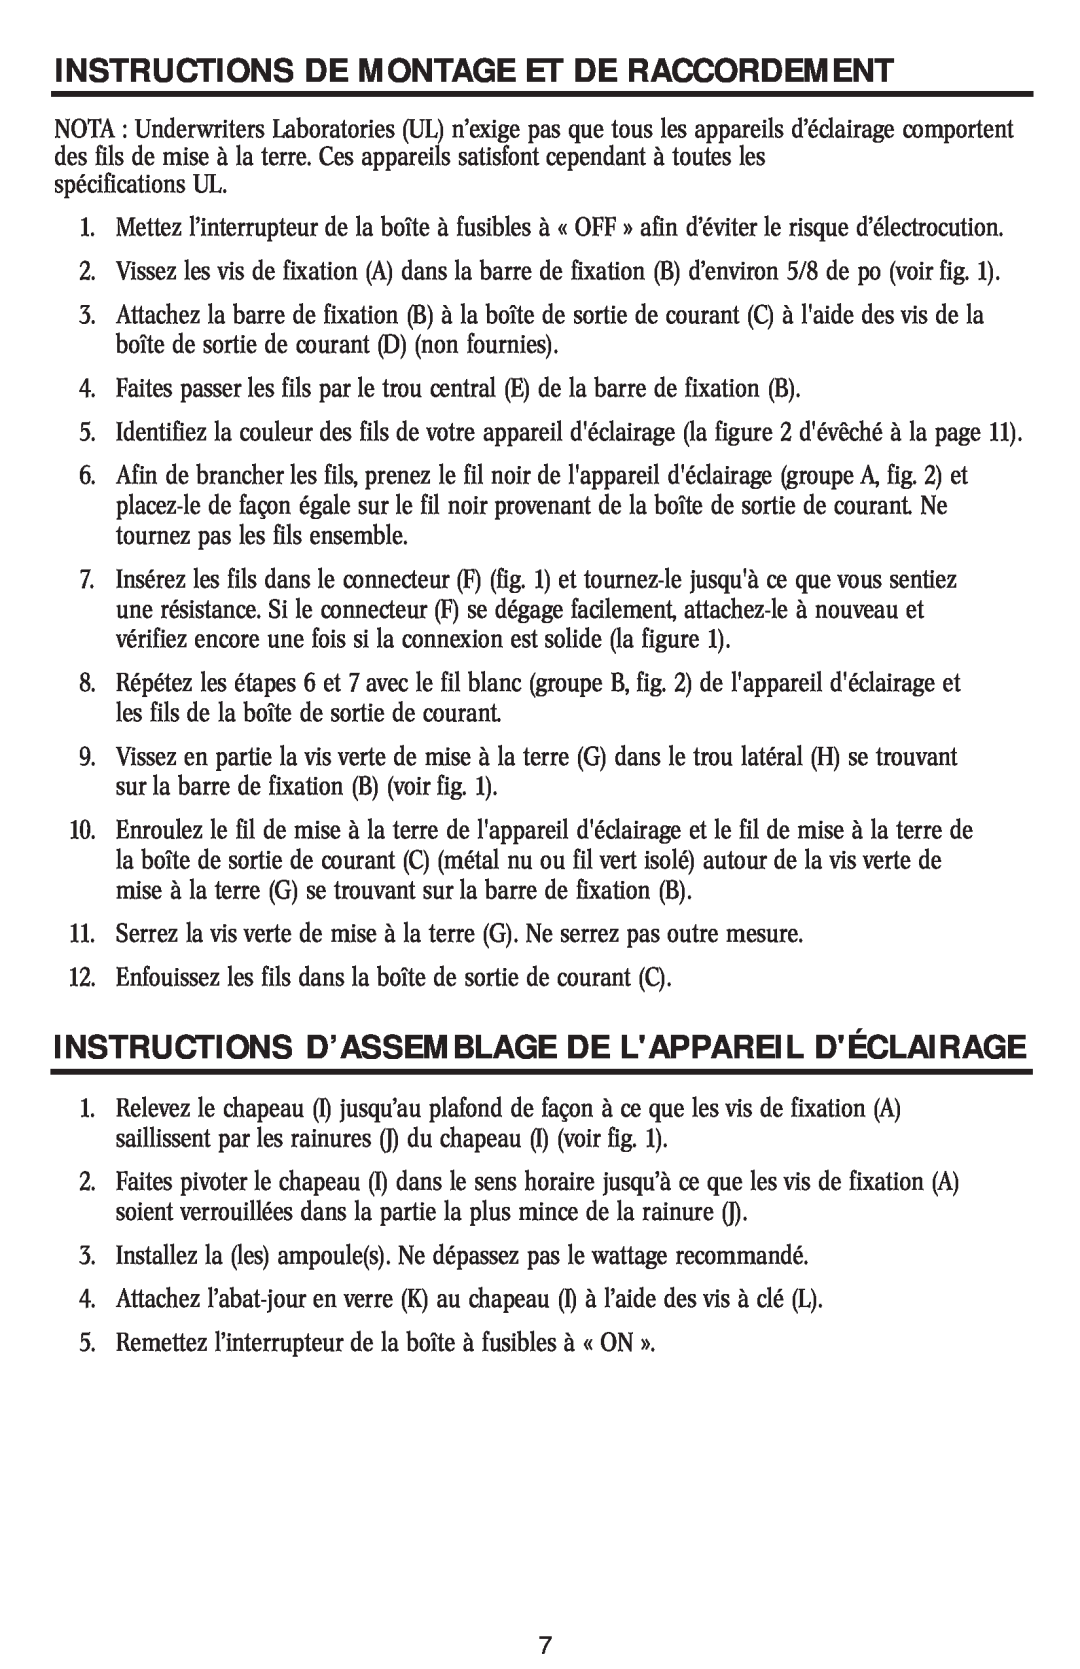 Westinghouse w-040 Instructions D’Assemblage De Lappareil Déclairage, Instructions De Montage Et De Raccordement 